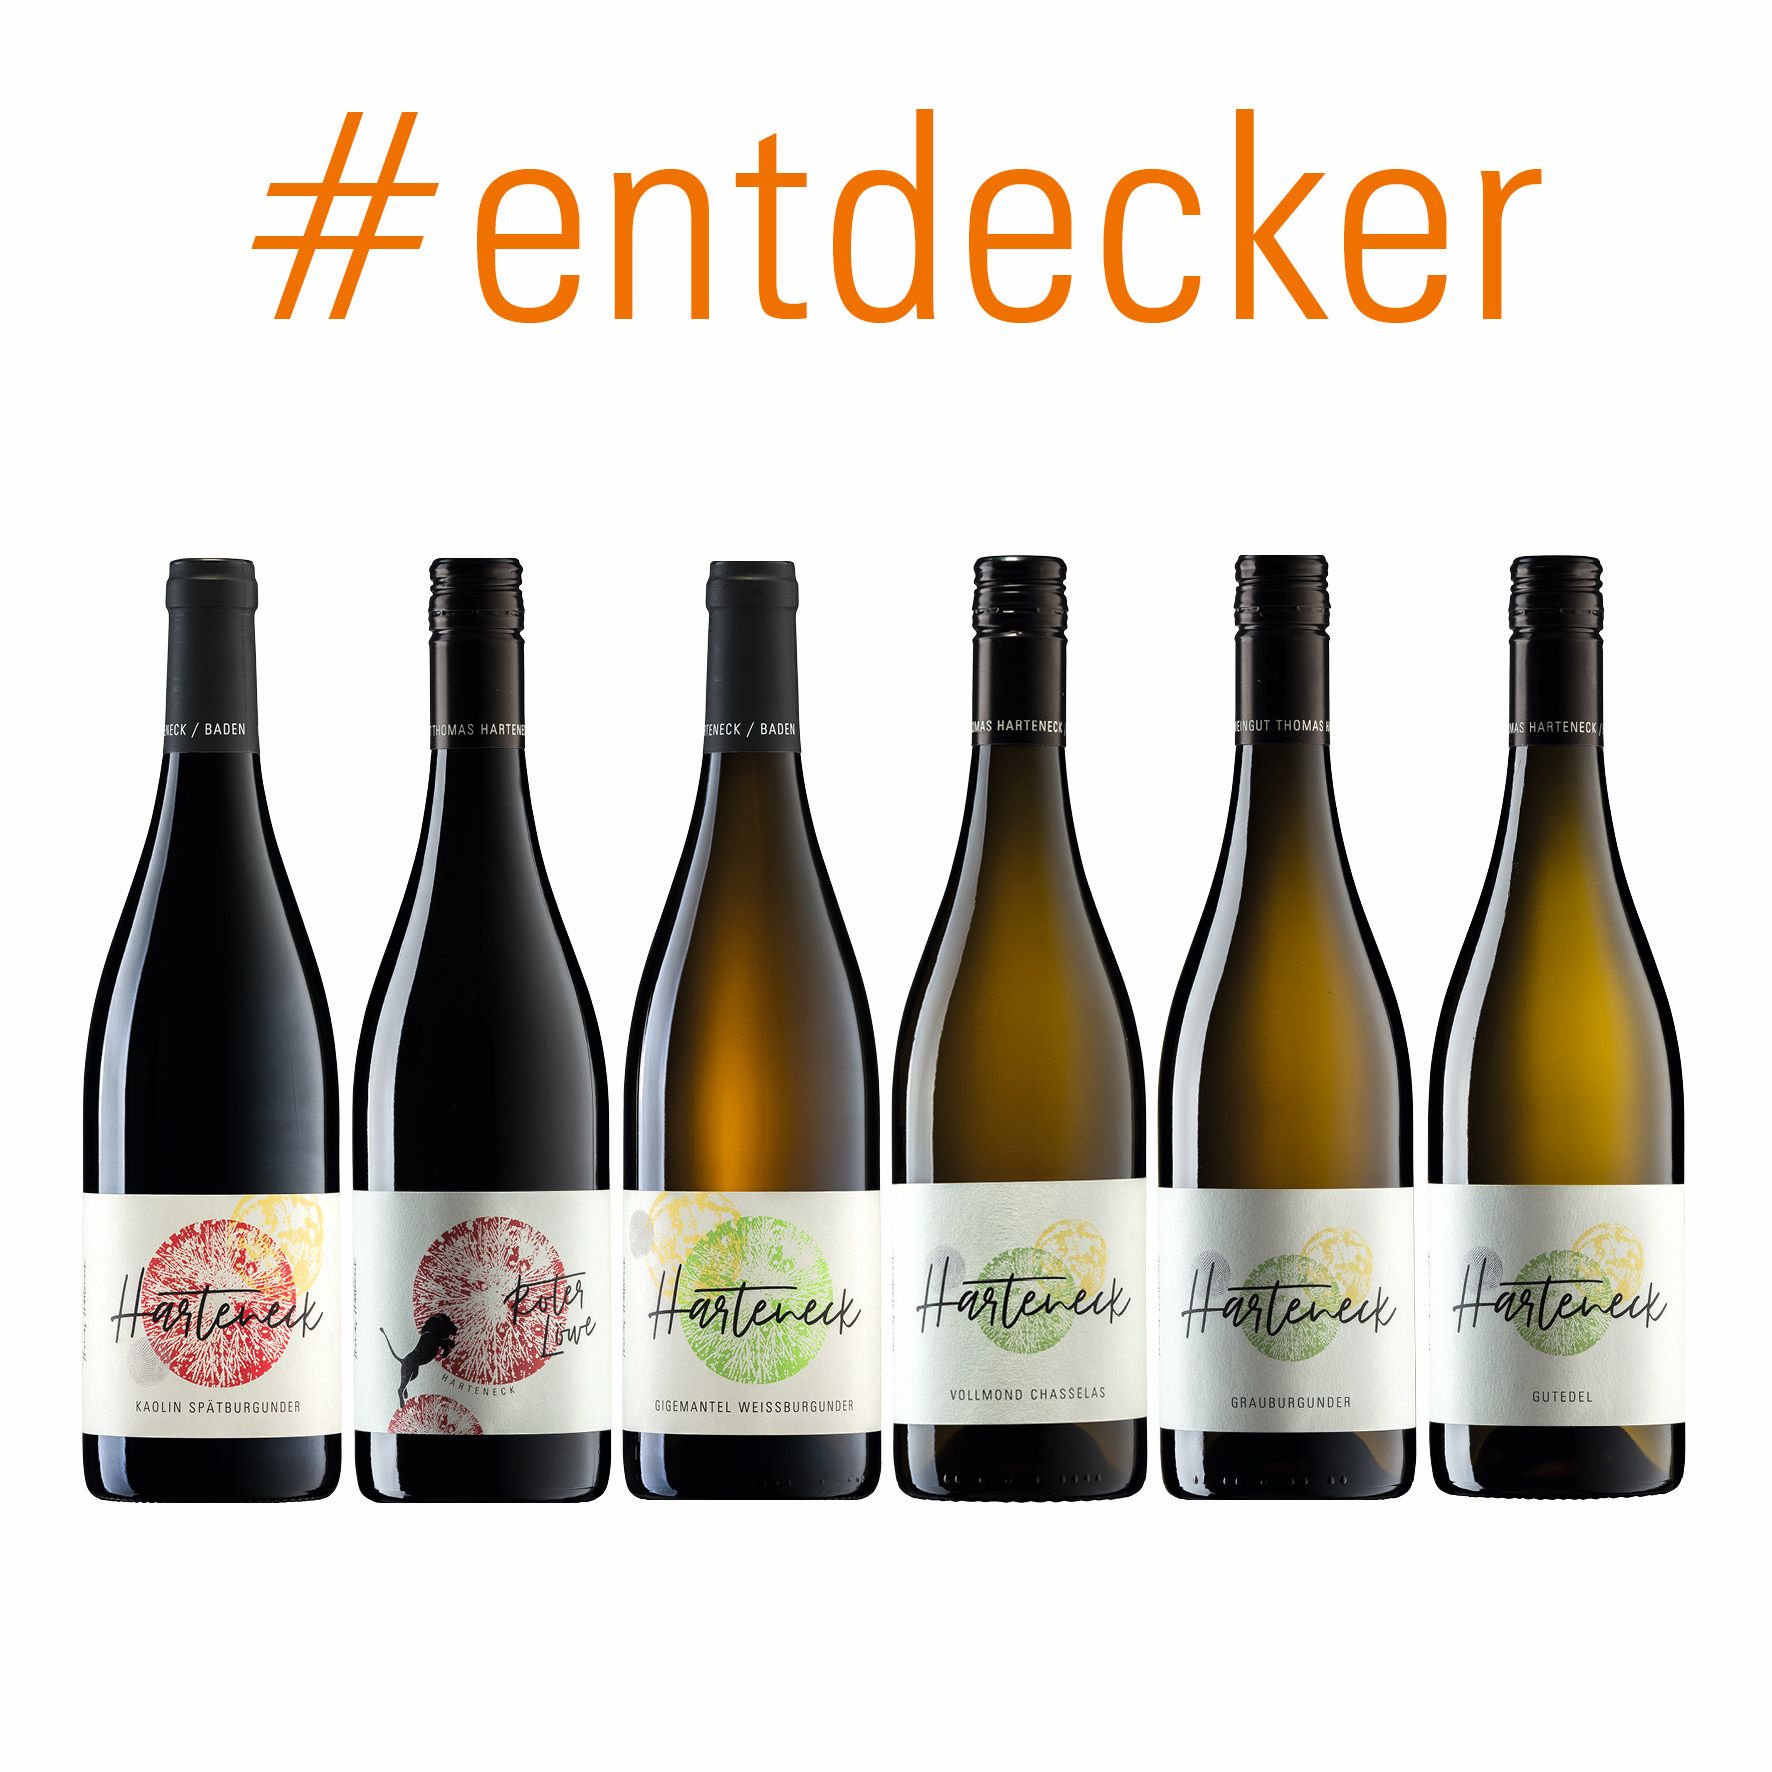 / Harteneck Natural Wein entdecker: Biodynamisch Flaschen / 6 portofrei! / / Thomas -